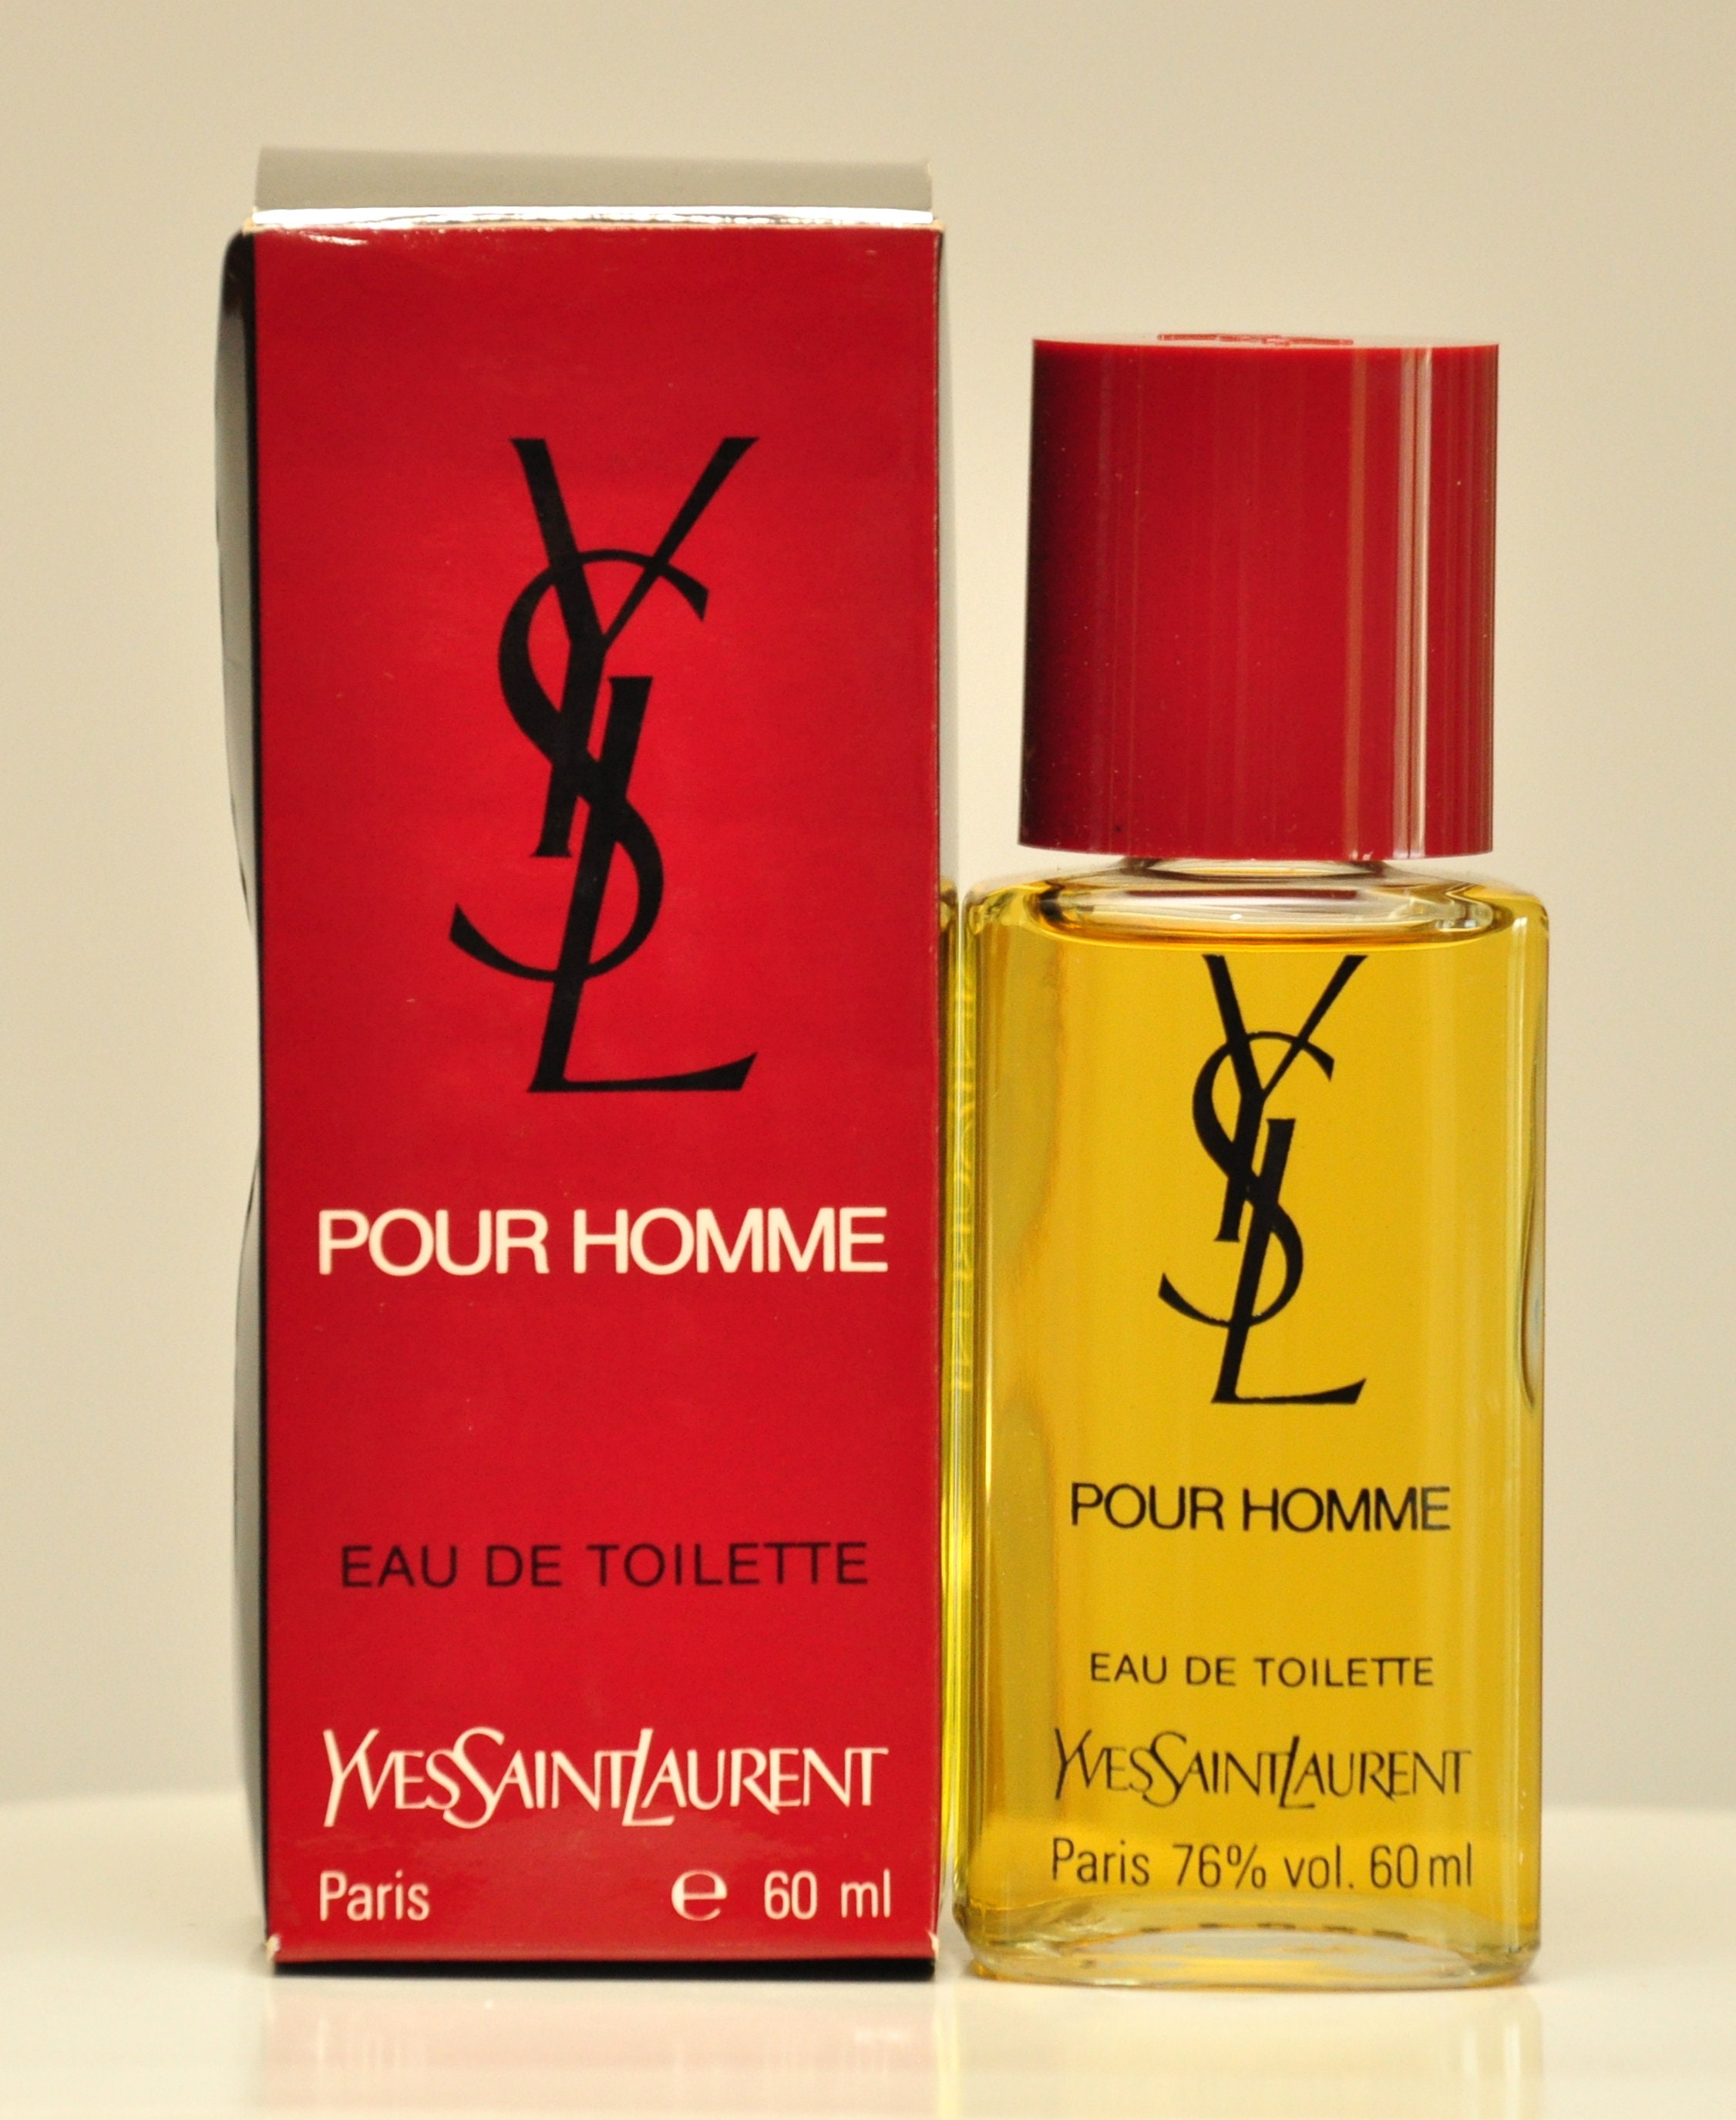 Yves Saint Laurent Ysl Pour Homme Eau De Toilette Edt 60ml 2 - Etsy